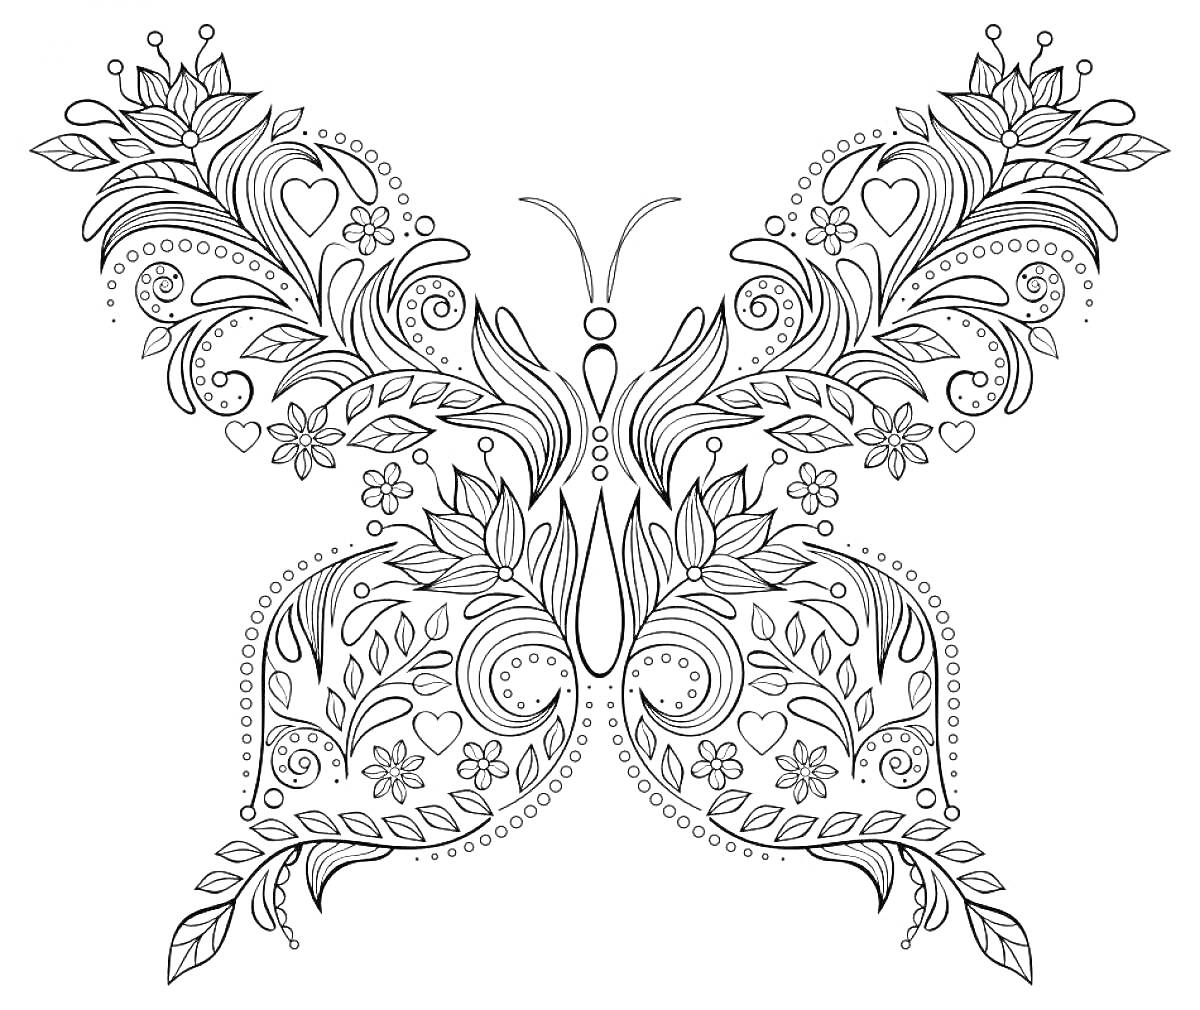 Раскраска Бабочка с узорами из листьев и цветов, окруженная маленькими декоративными элементами